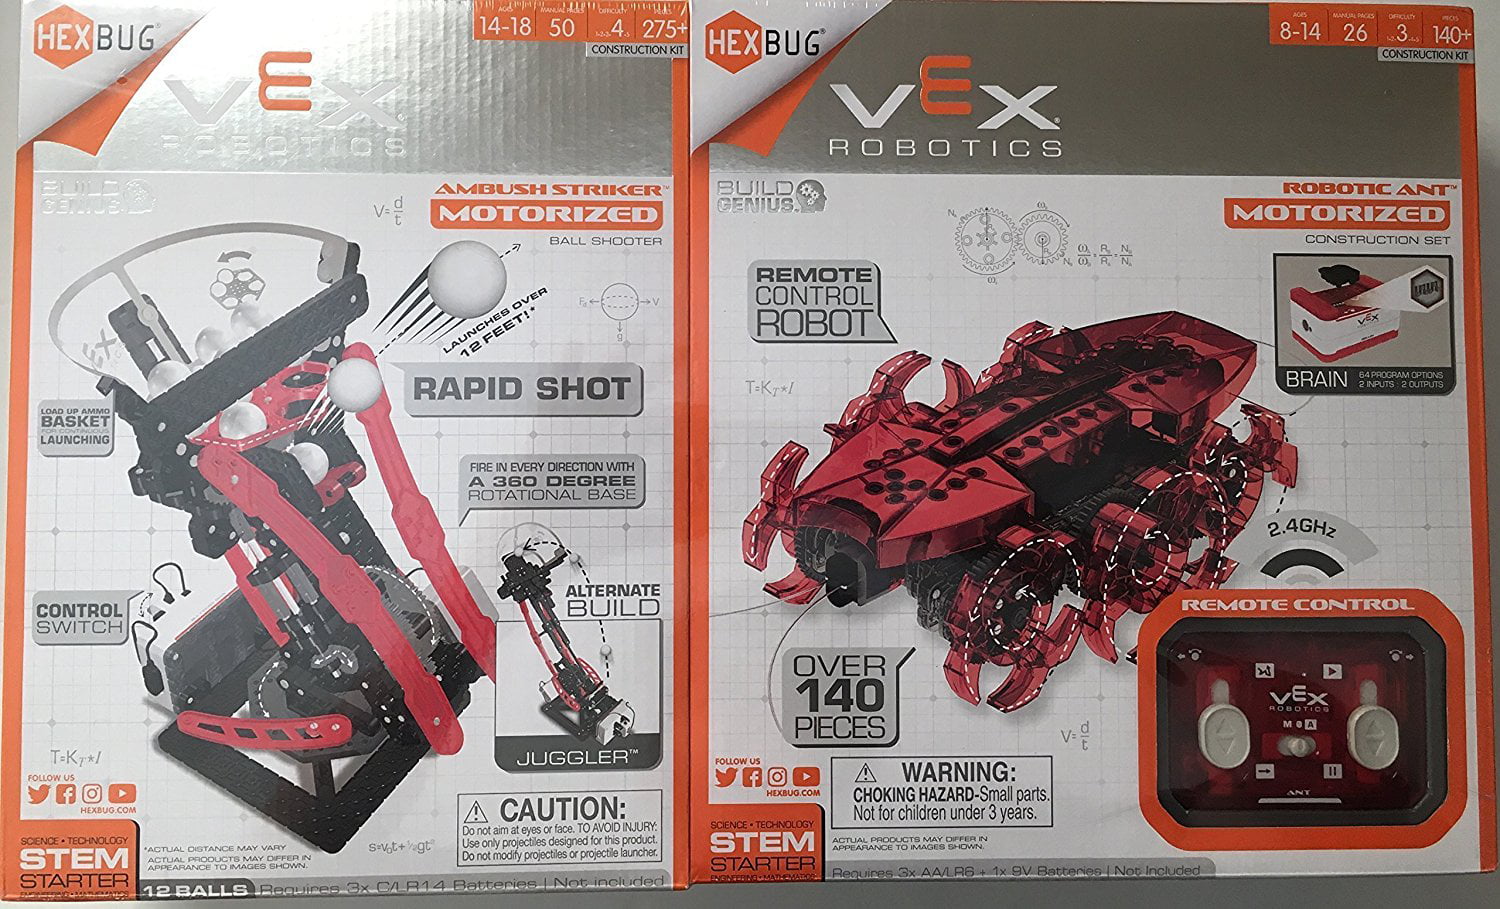 HEXBUG Vex Robotics 2 Pack-ambush Striker Motorized Ball Shooter Robotic ANT for sale online 